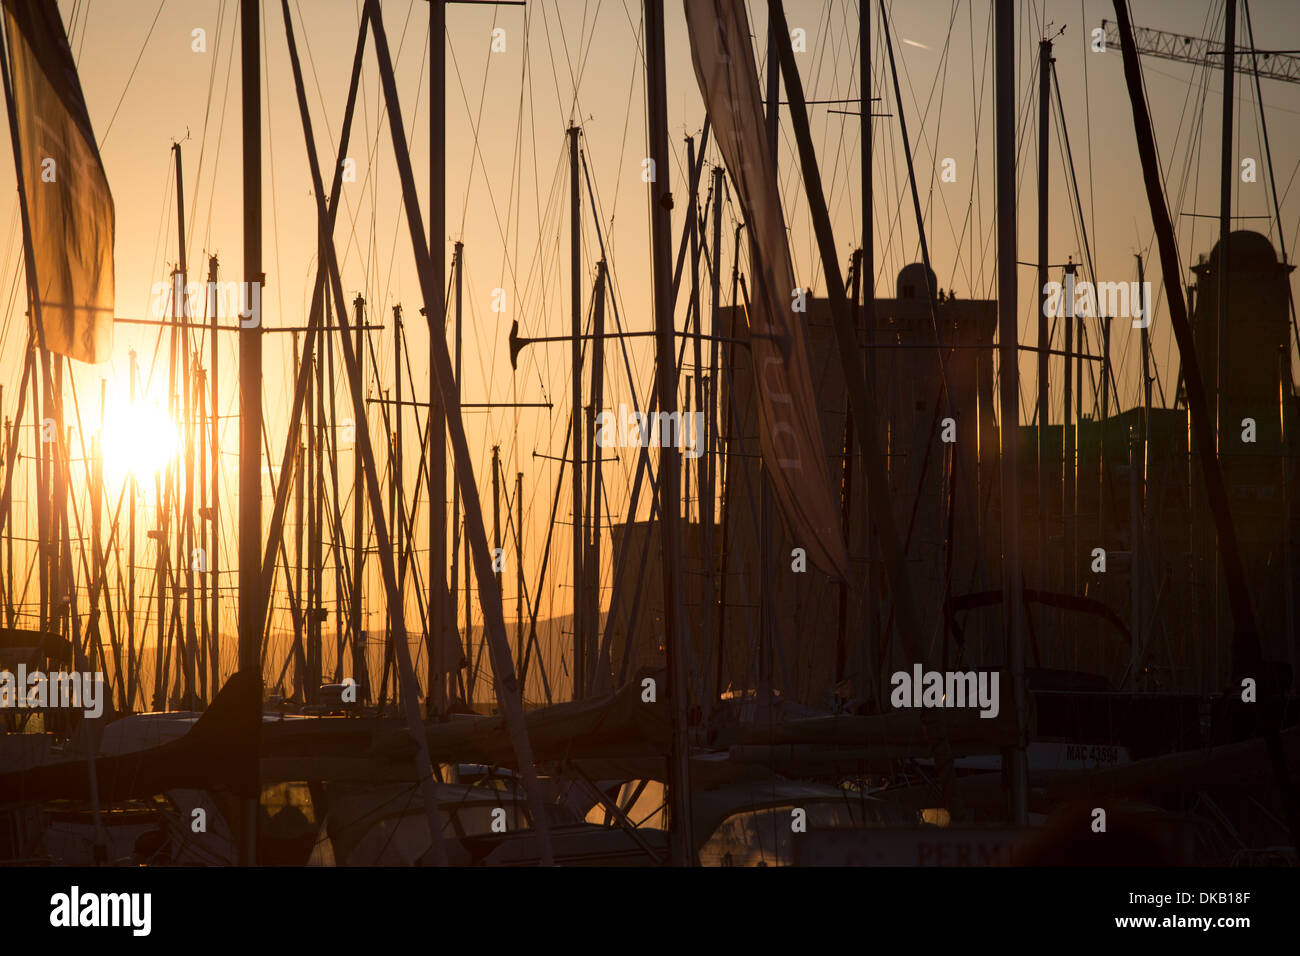 Mástiles de barco de vela al atardecer, Marsella, Francia Foto de stock